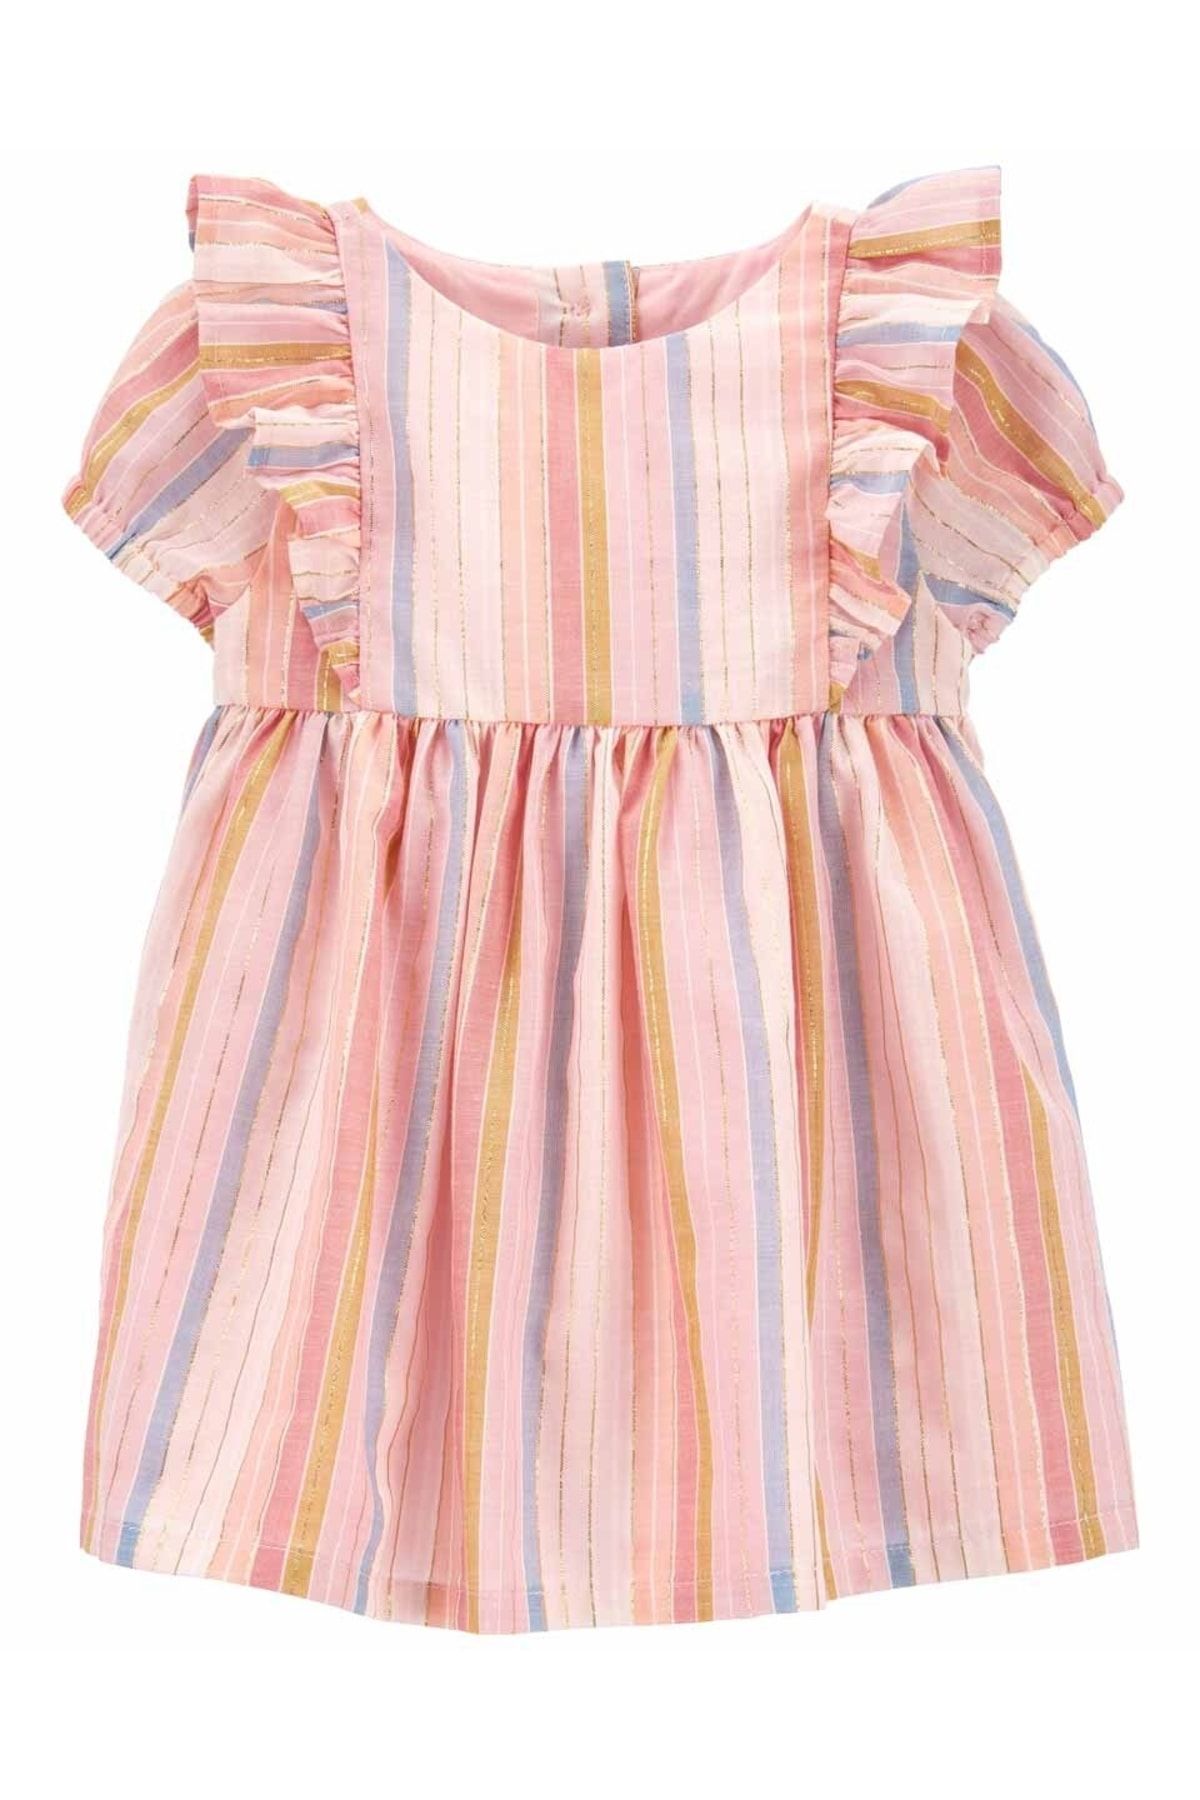 Oshkosh B’gosh Kız Bebek Çizgi Desenli Elbise